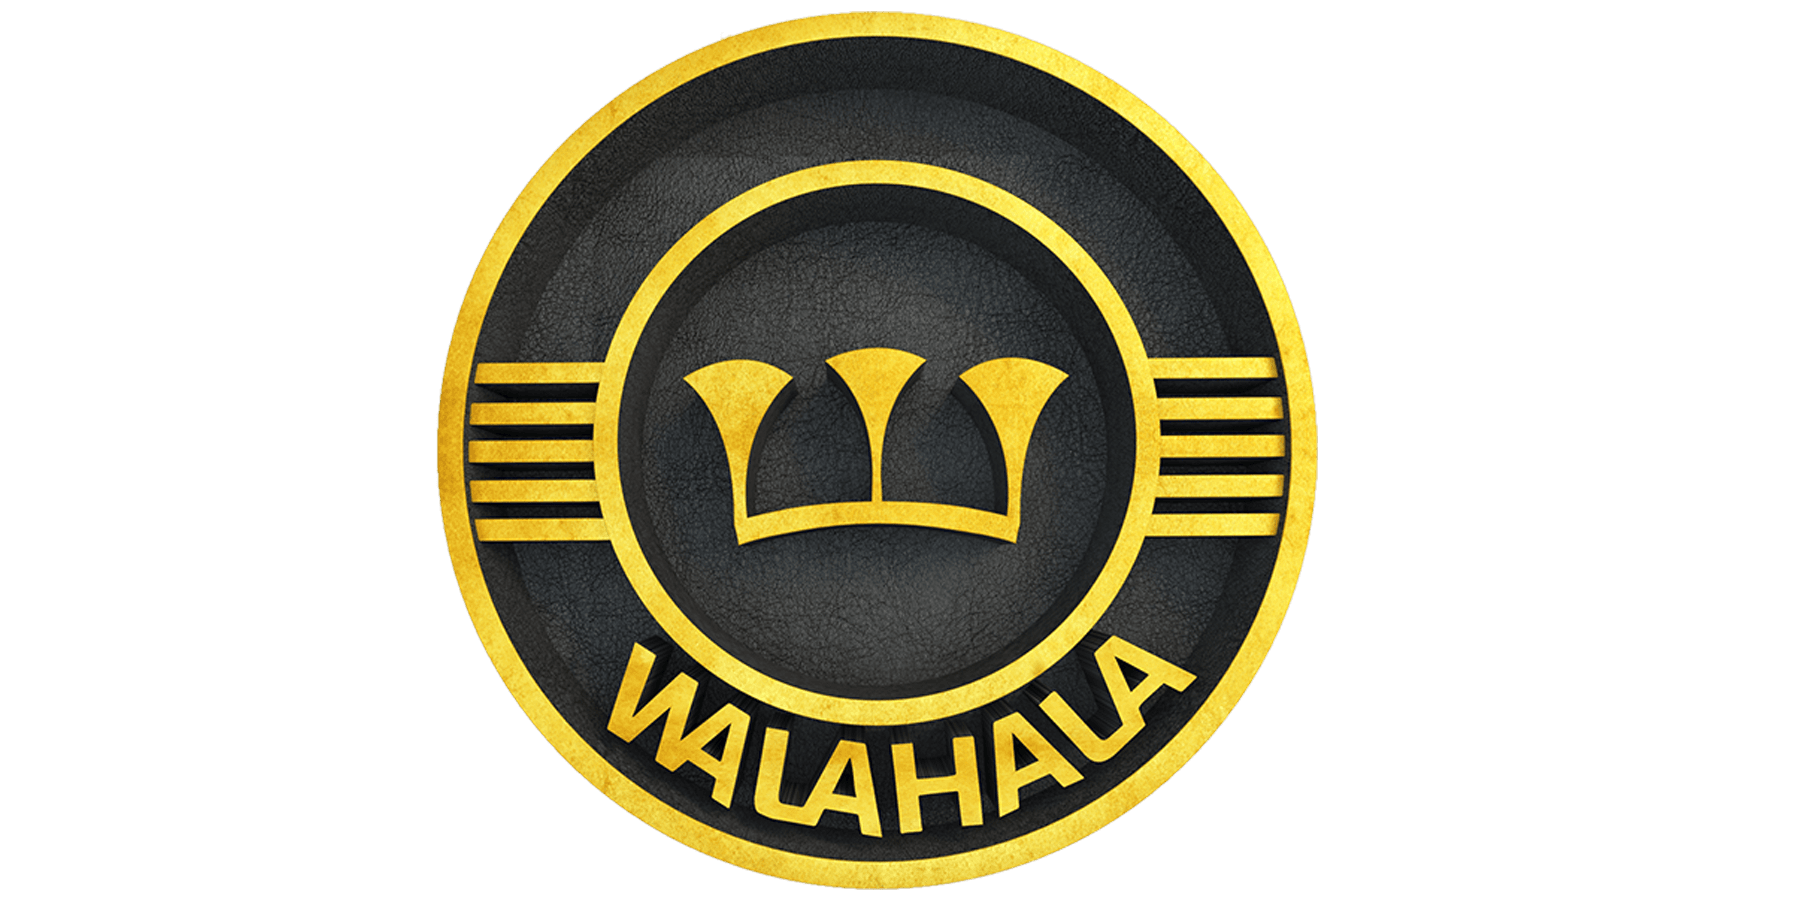 WALAHALA